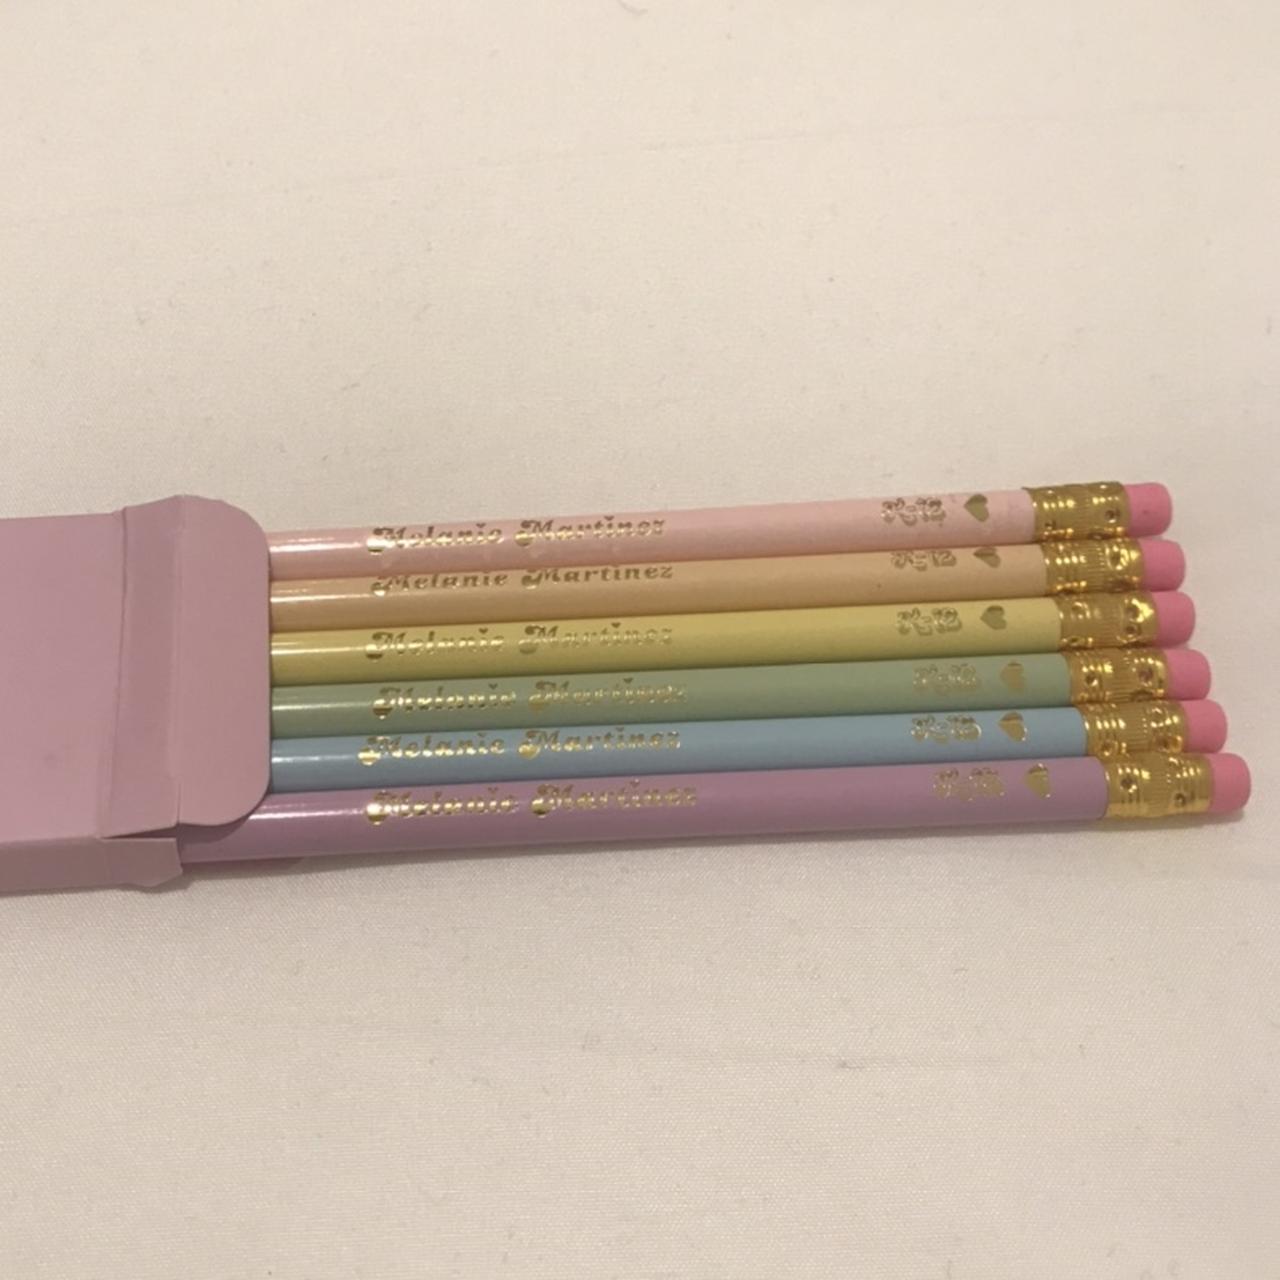 K-12 Pencil Case  Melanie Martinez Official Store